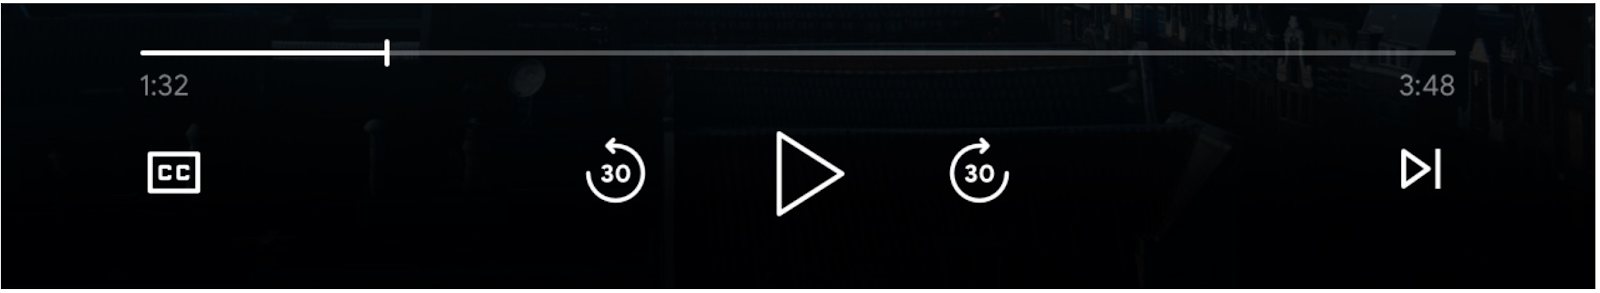 تصویر کنترل‌های پخش‌کننده رسانه: نوار پیشرفت، دکمه «پخش»، دکمه‌های «پرش به جلو» و «پرش به عقب»، دکمه‌های «صف قبلی» و «صف بعدی» و دکمه‌های «کپشن بسته» فعال هستند.